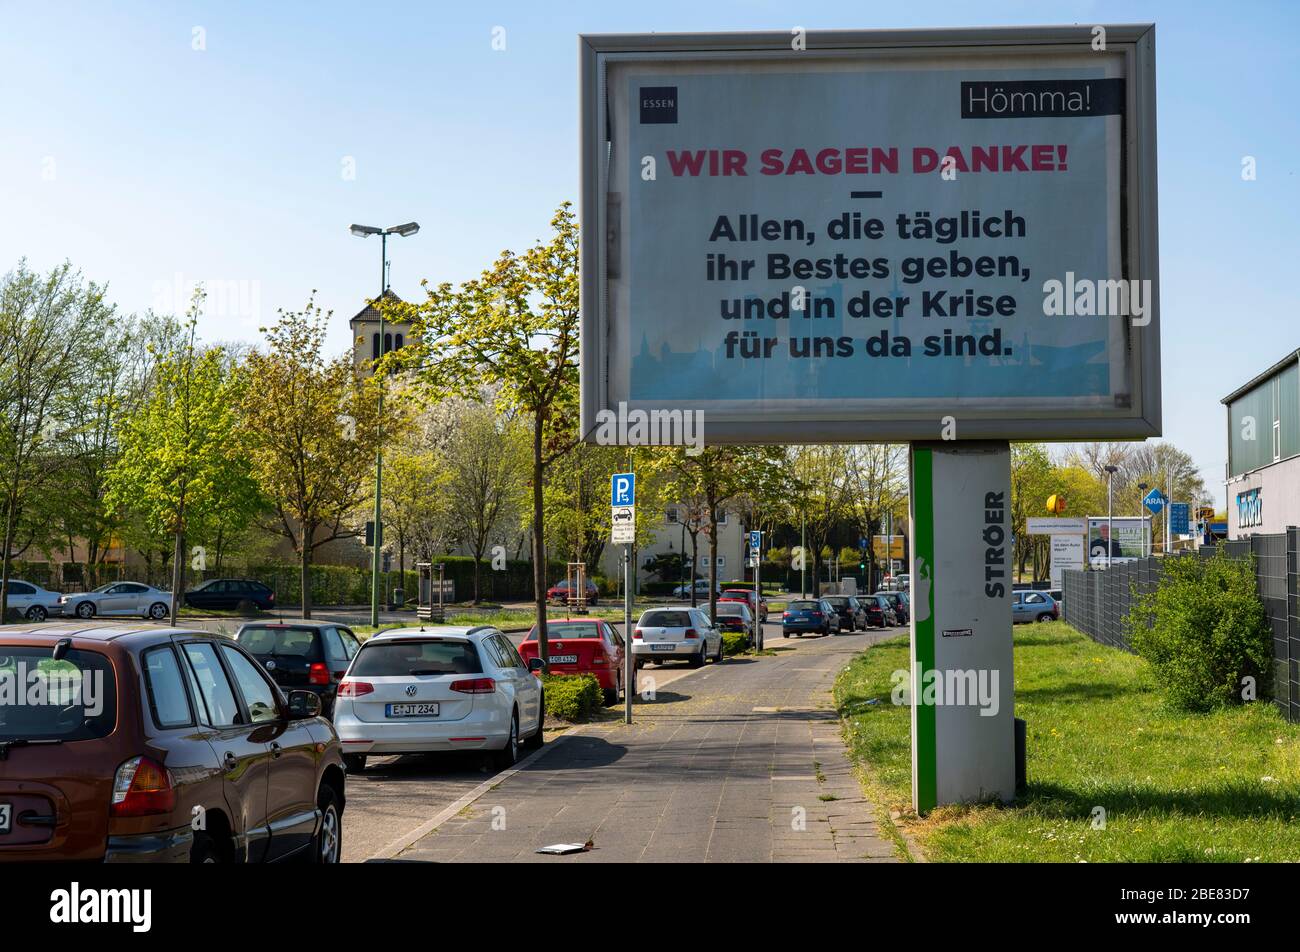 Publicité pendant la pandémie de Corona, la ville d'Essen remercie les héros de la vie quotidienne, les effets de la crise de Corona à Essen, en Allemagne Banque D'Images